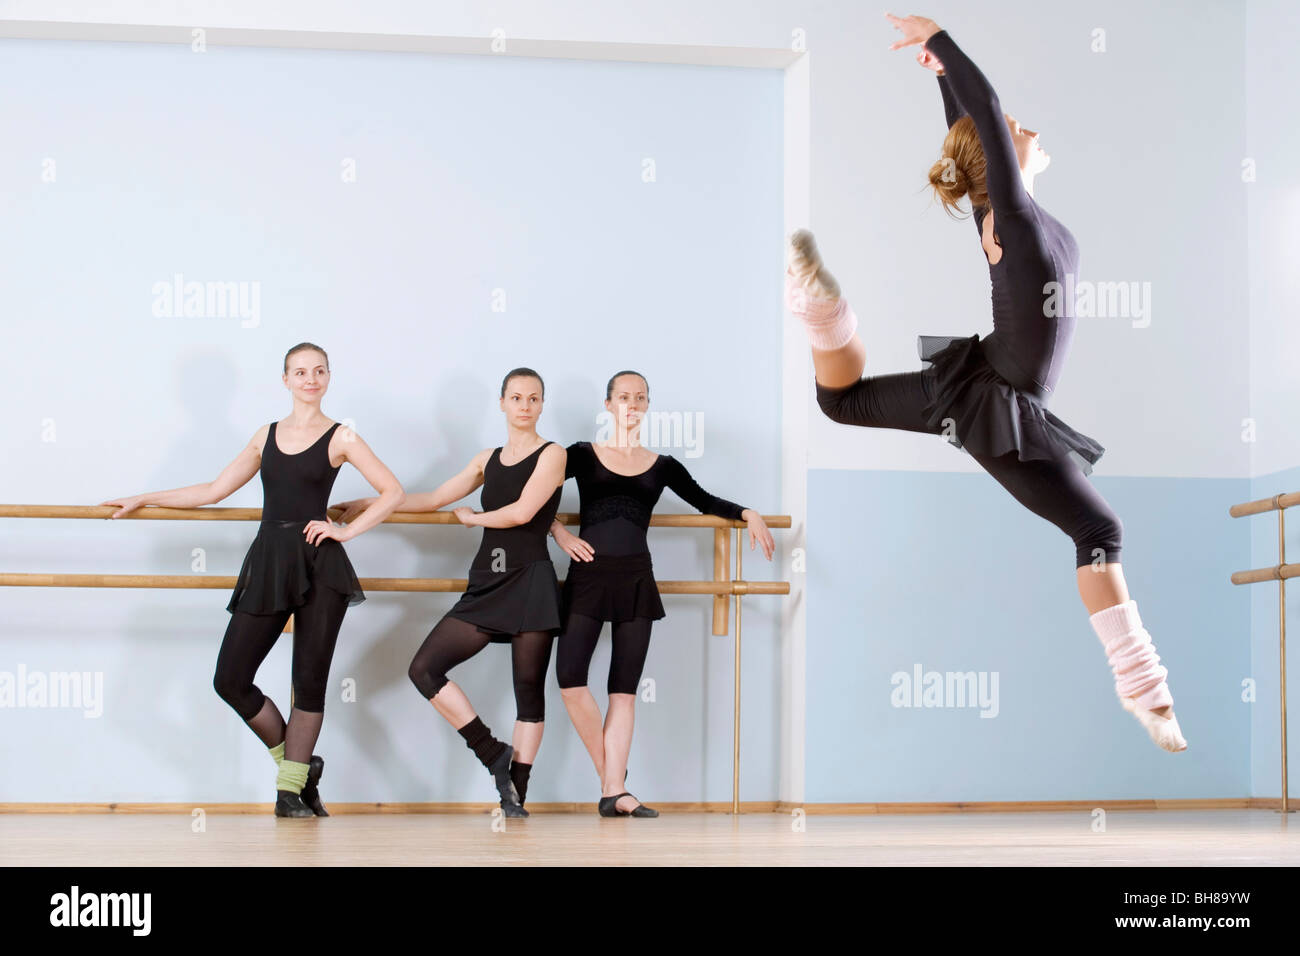 Sprung durch die Luft wie drei andere Frauen schauen auf ballerina Stockfoto